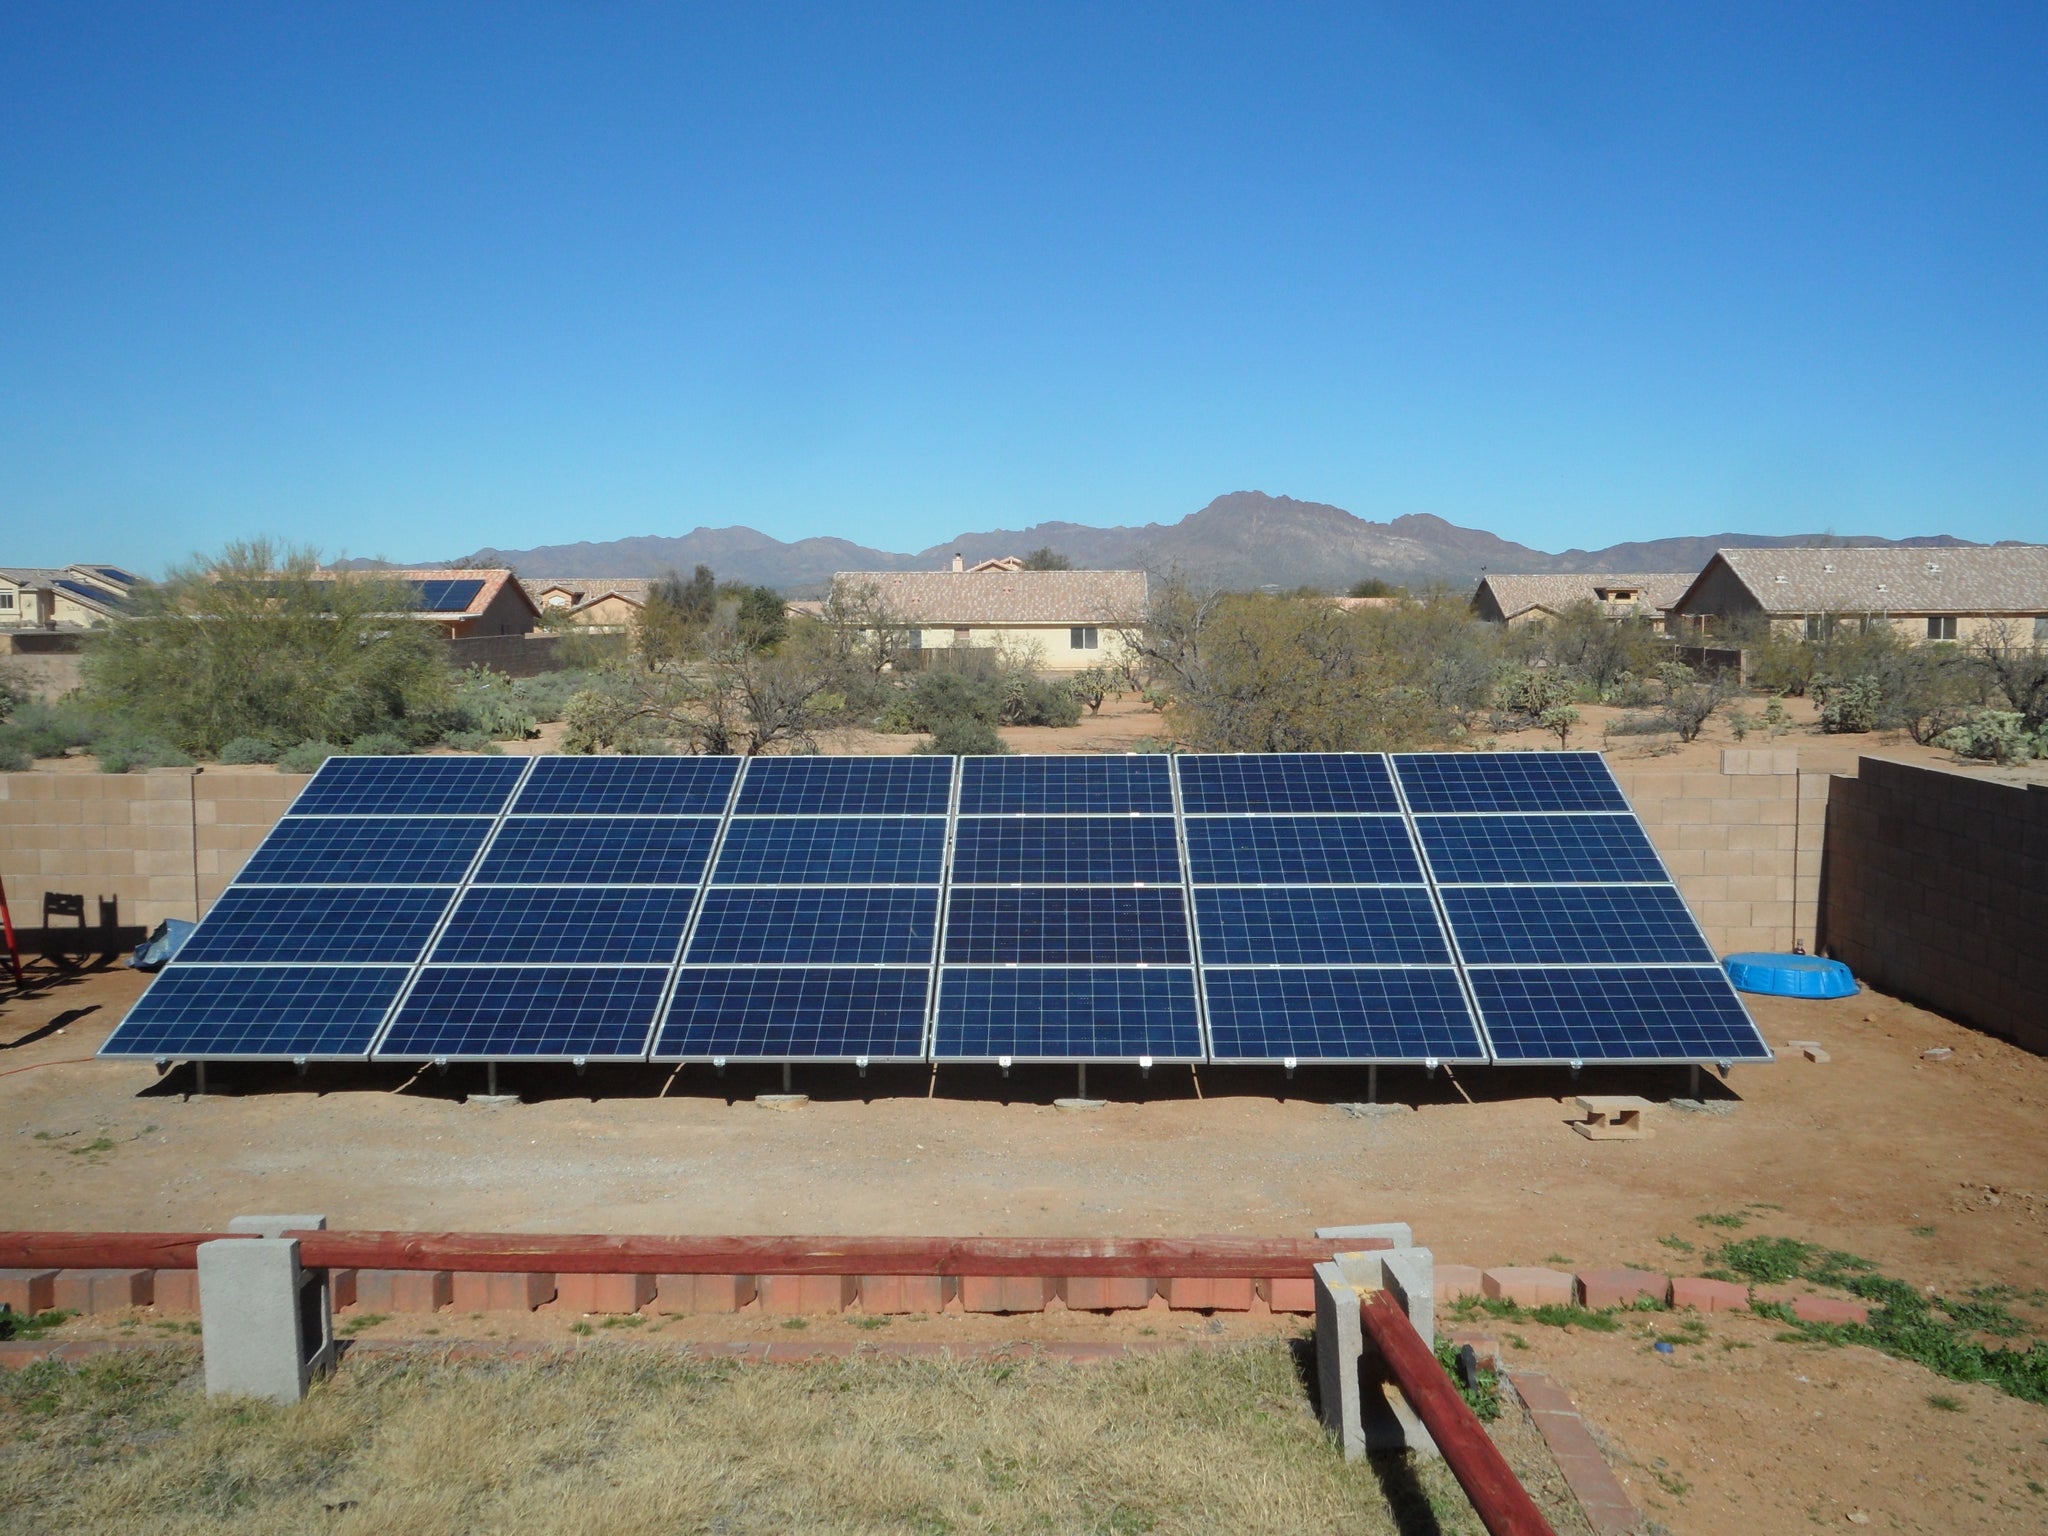 6kW Solar Panel Installation Kit - 6000 Watt Solar PV System for Homes